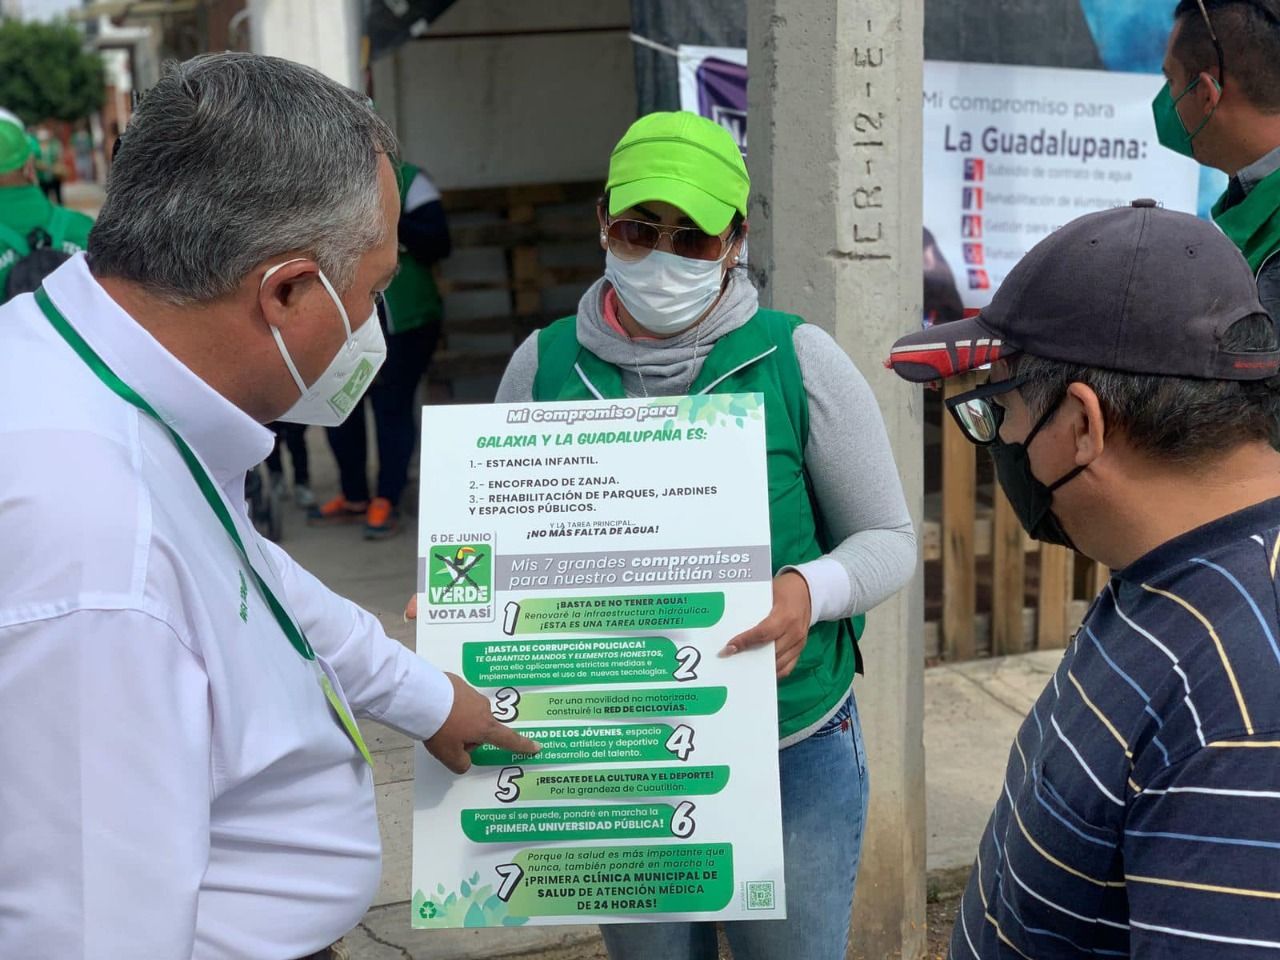 Rafael Dorantes invitó a los ciudadanos a trabajar de la mano para mejorar Cuautitlán